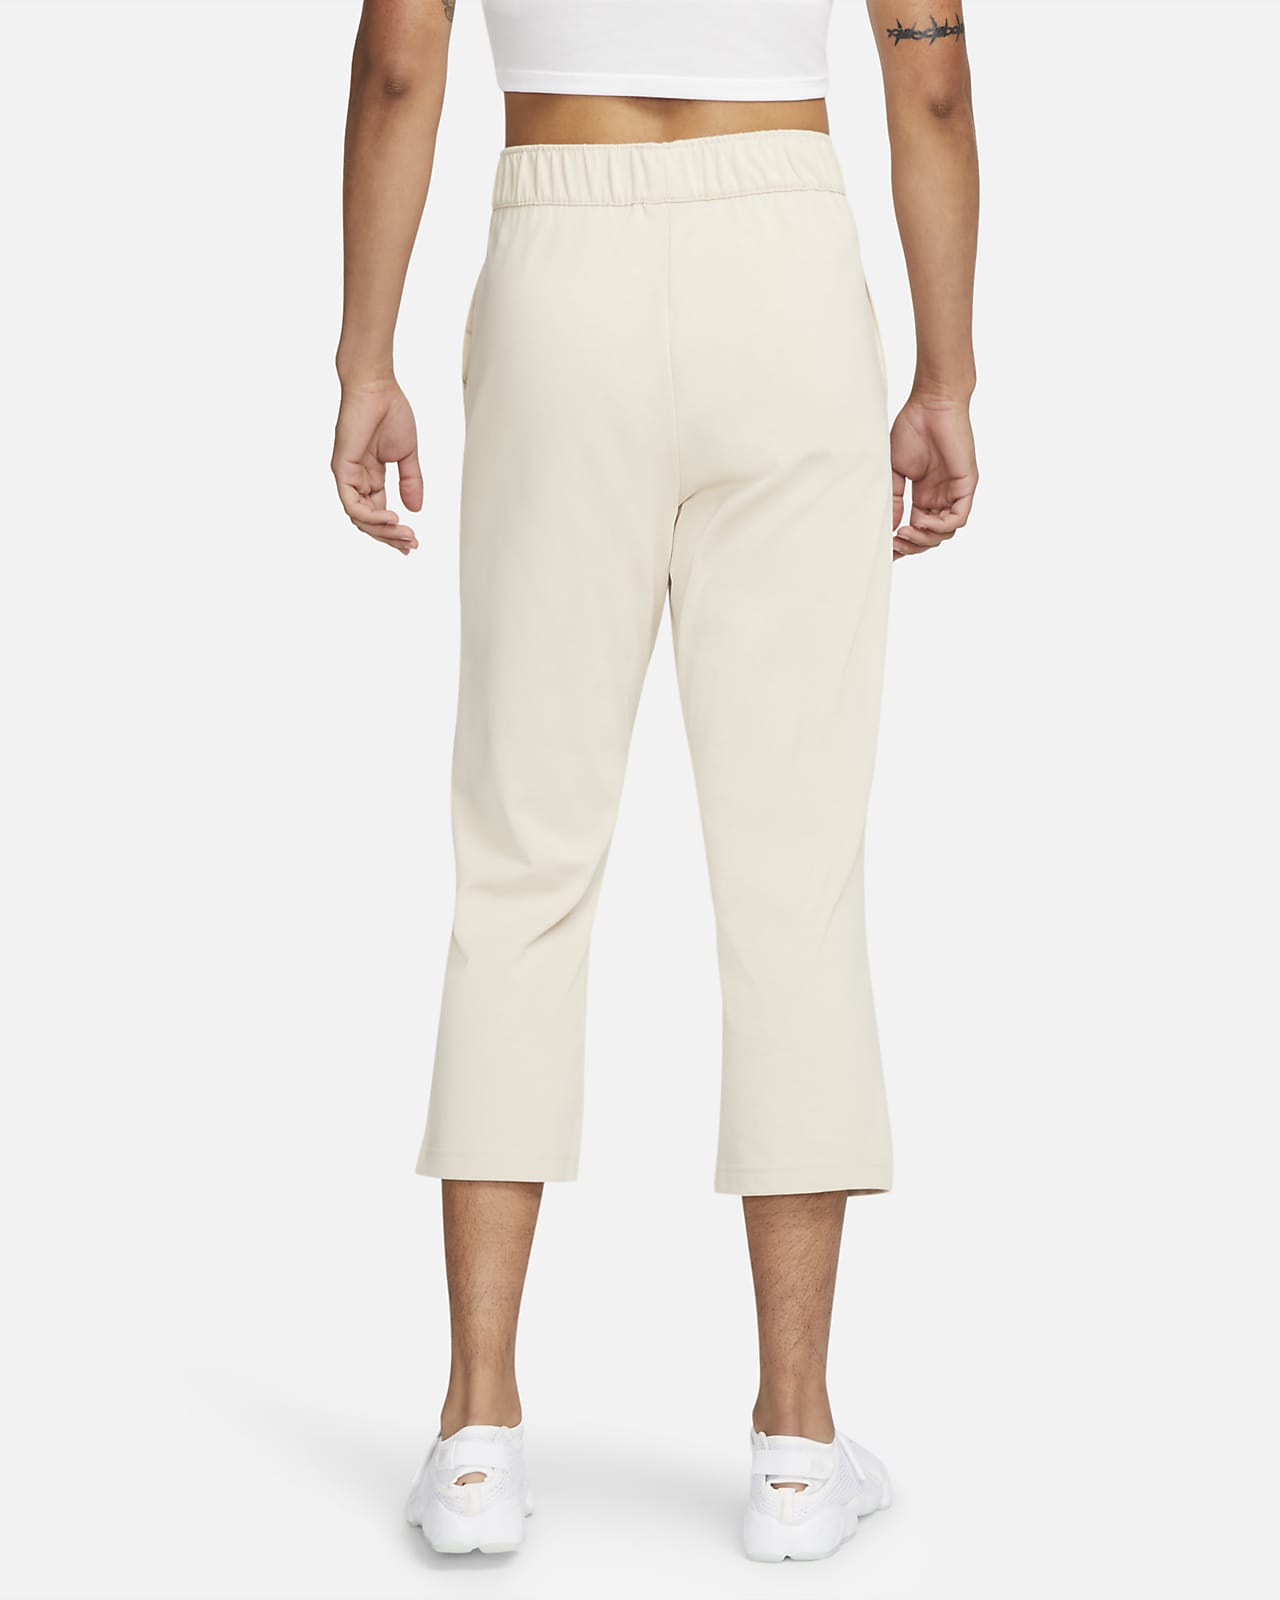 Sportswear Women's Jersey Capri Pants. Nike.com